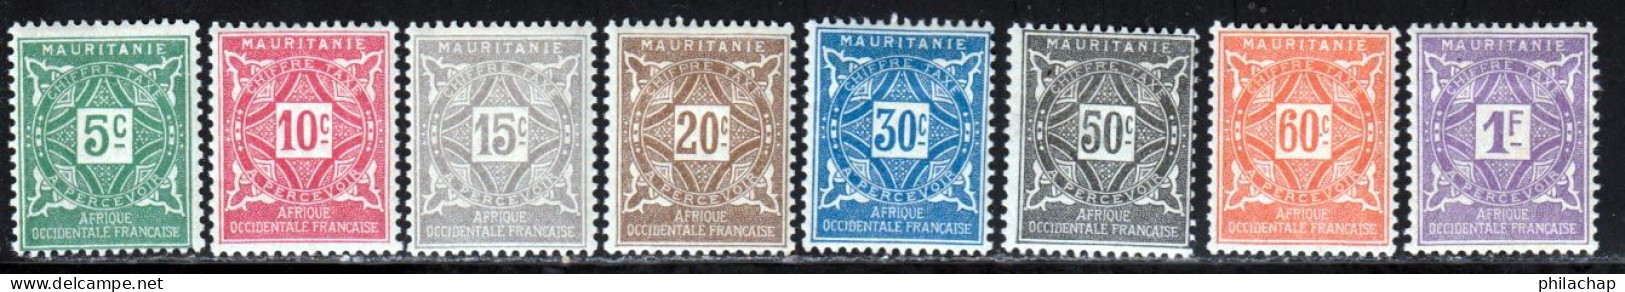 Mauritanie Taxe 1914 Yvert 17 / 24 * TB Charniere(s) - Ongebruikt